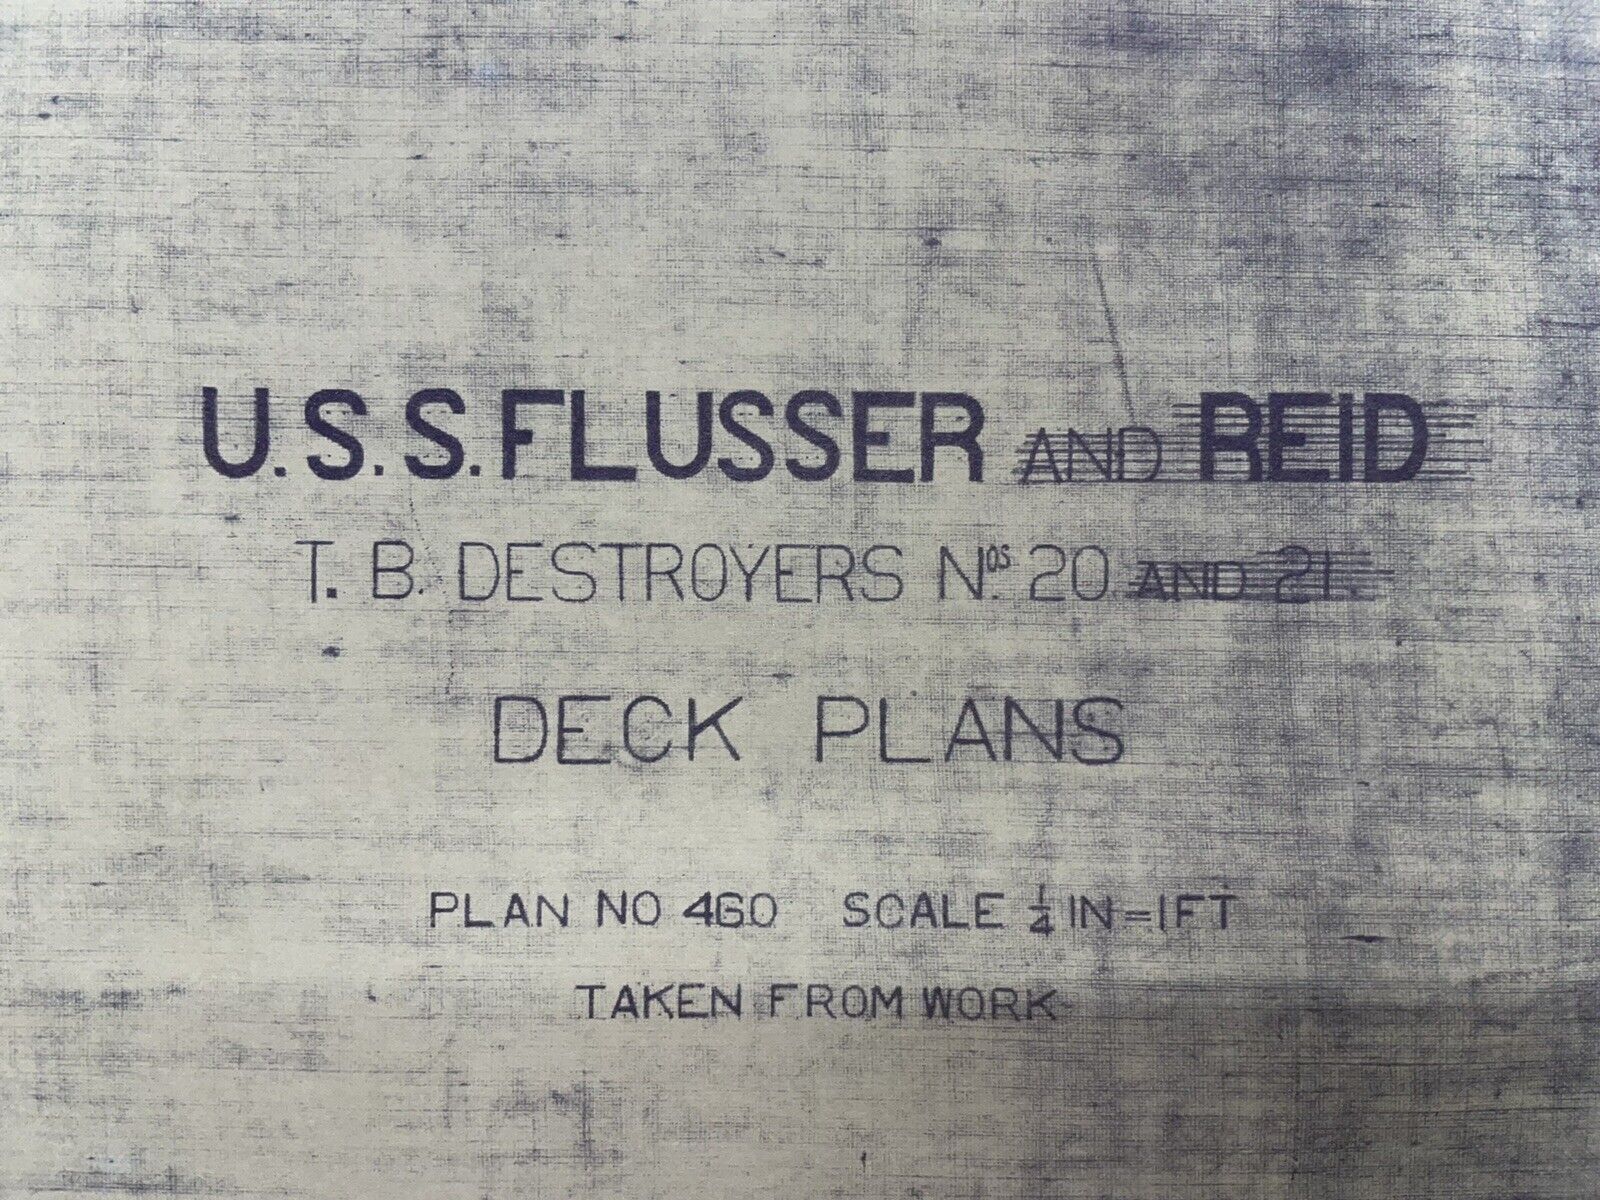 Uss Flusser (dd-20) Deck Plans